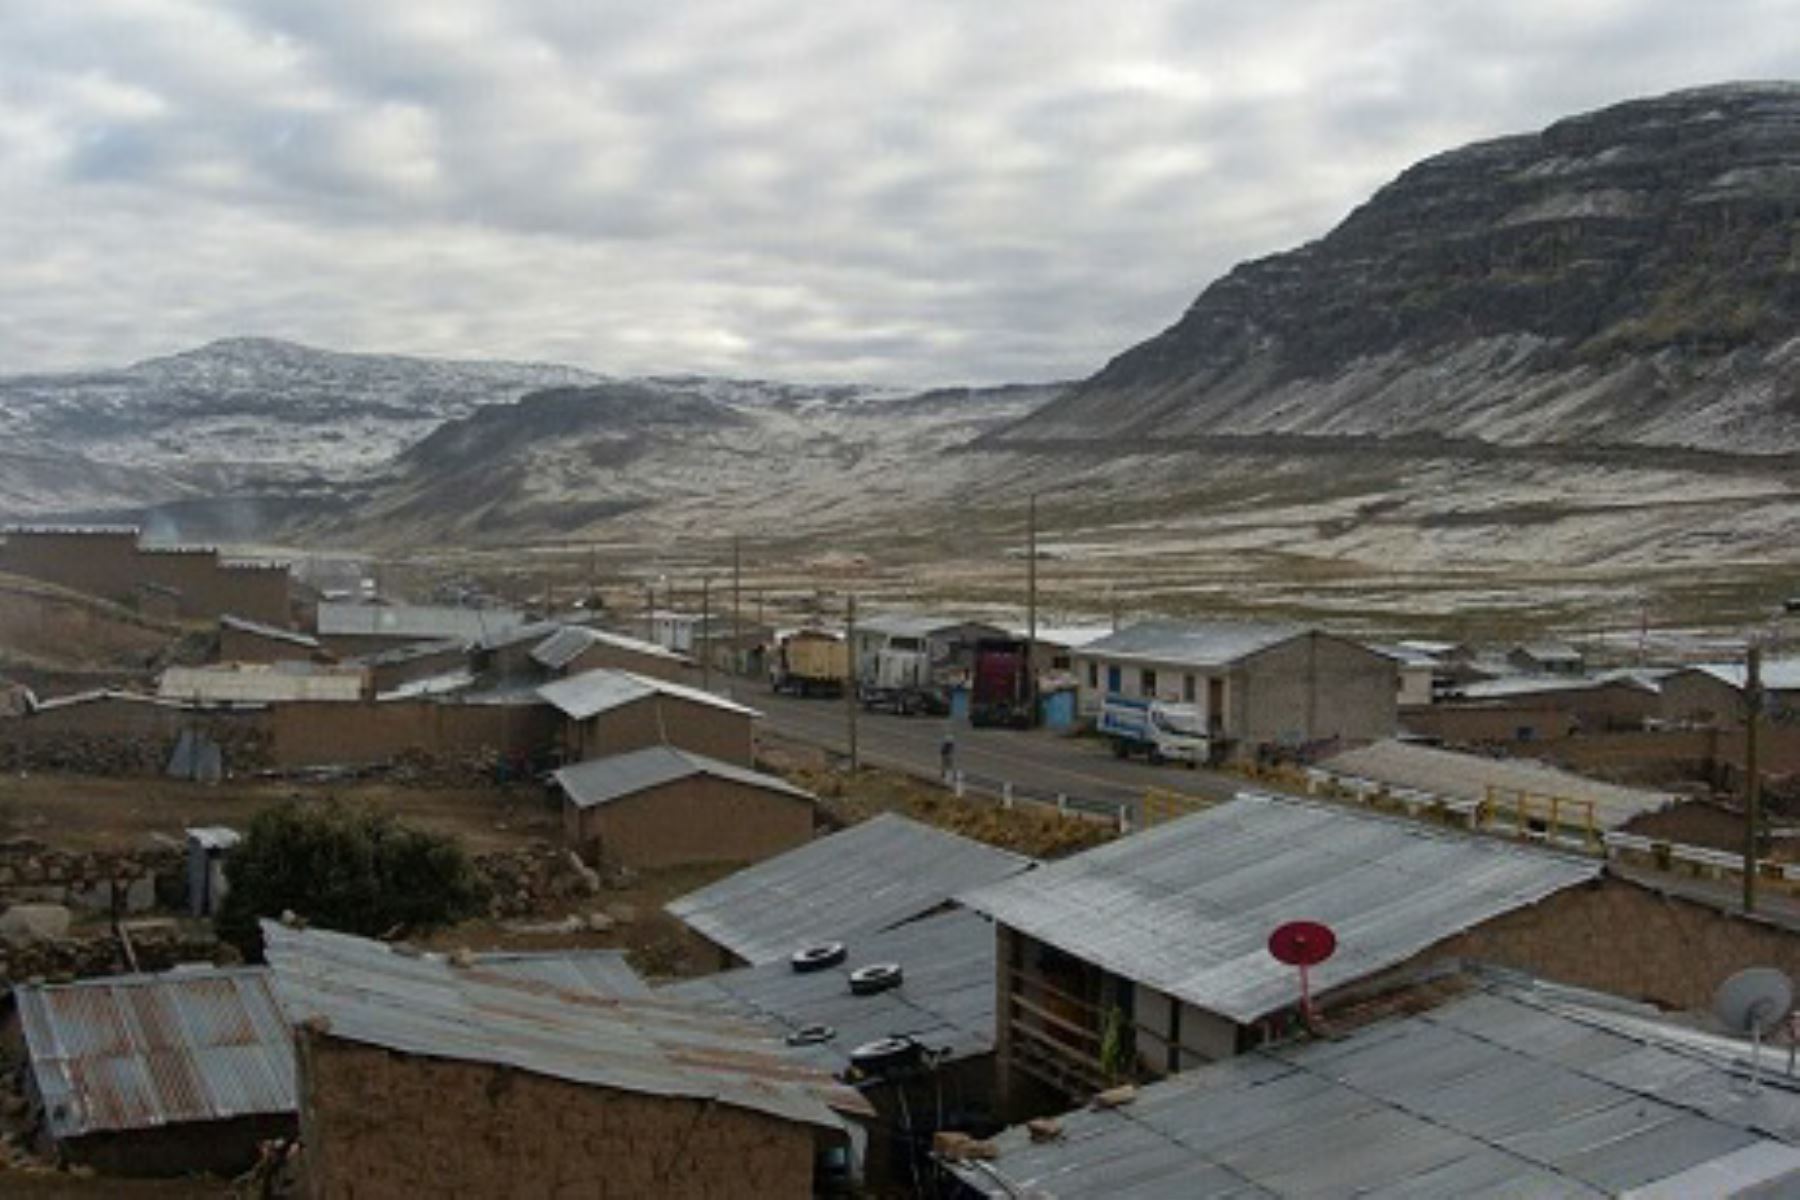 Un nuevo sismo, el segundo en lo que va del día, se registró en el centro poblado de Pampamarca, ubicado en la provincia ayacuchana de Parinacochas, informó el Instituto Geofísico del Perú (IGP).